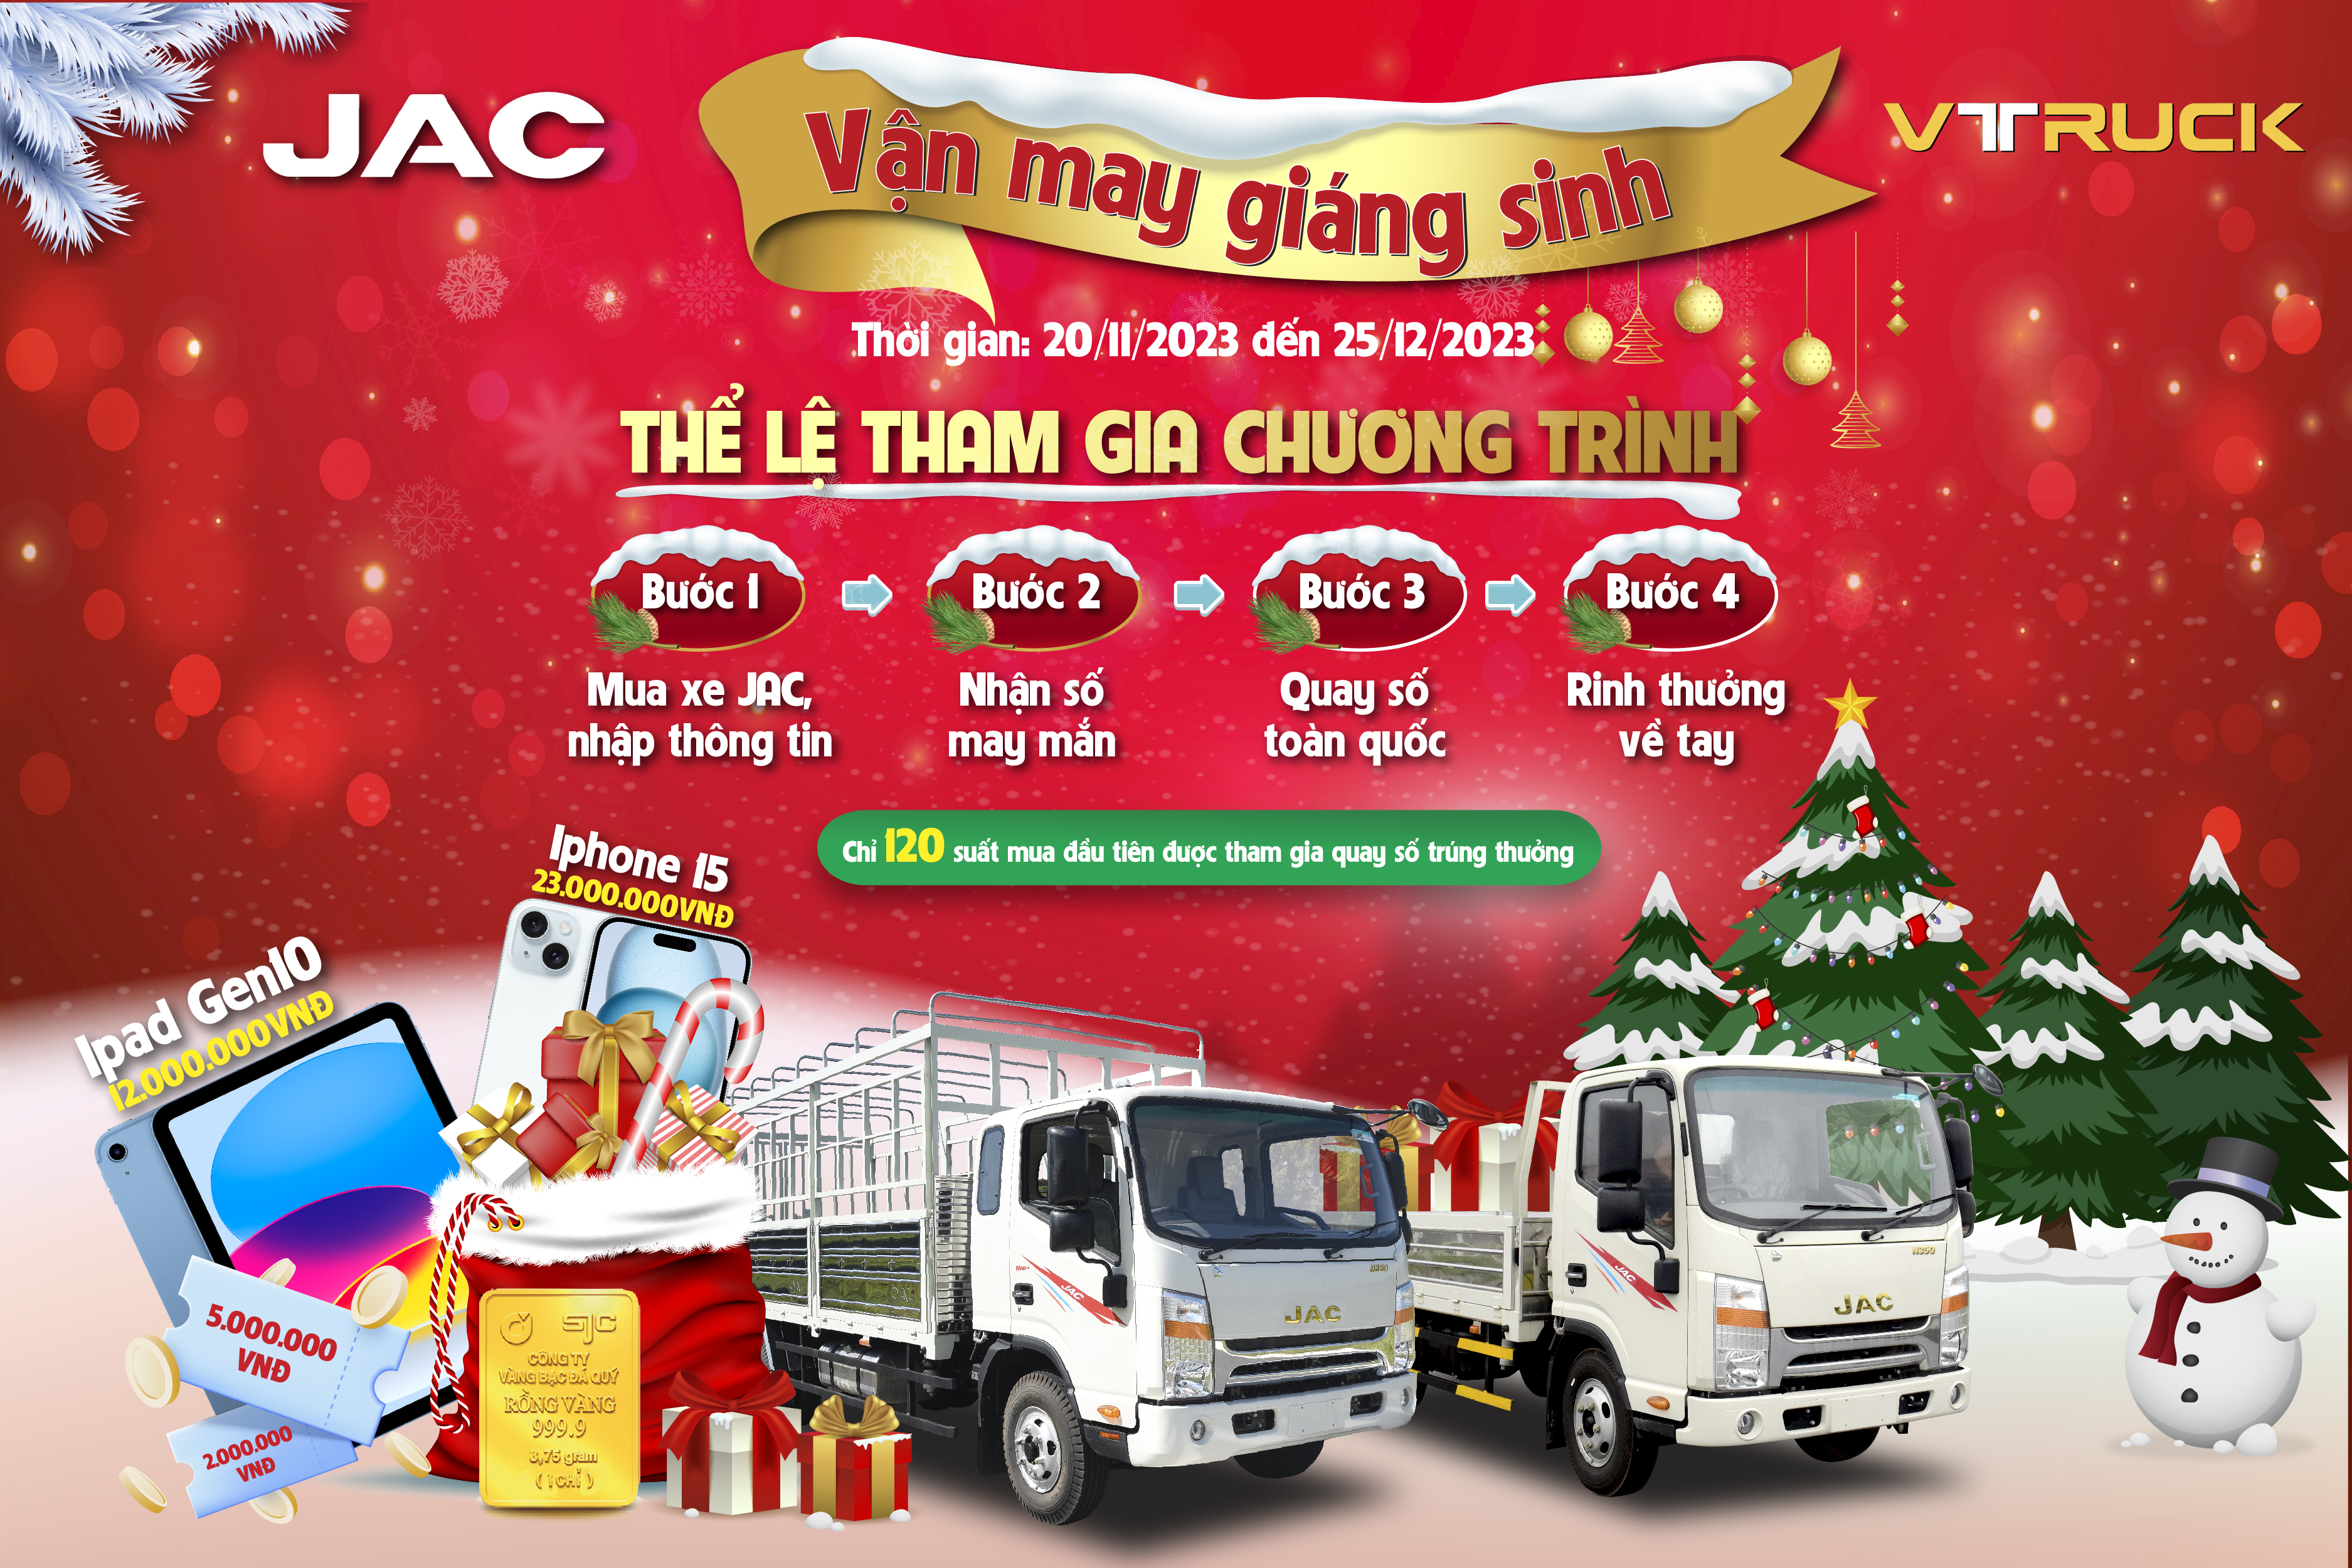 VTRUCK triển khai chương trình quay thưởng khi mua xe tải nhẹ JAC: Vận may Giáng sinh